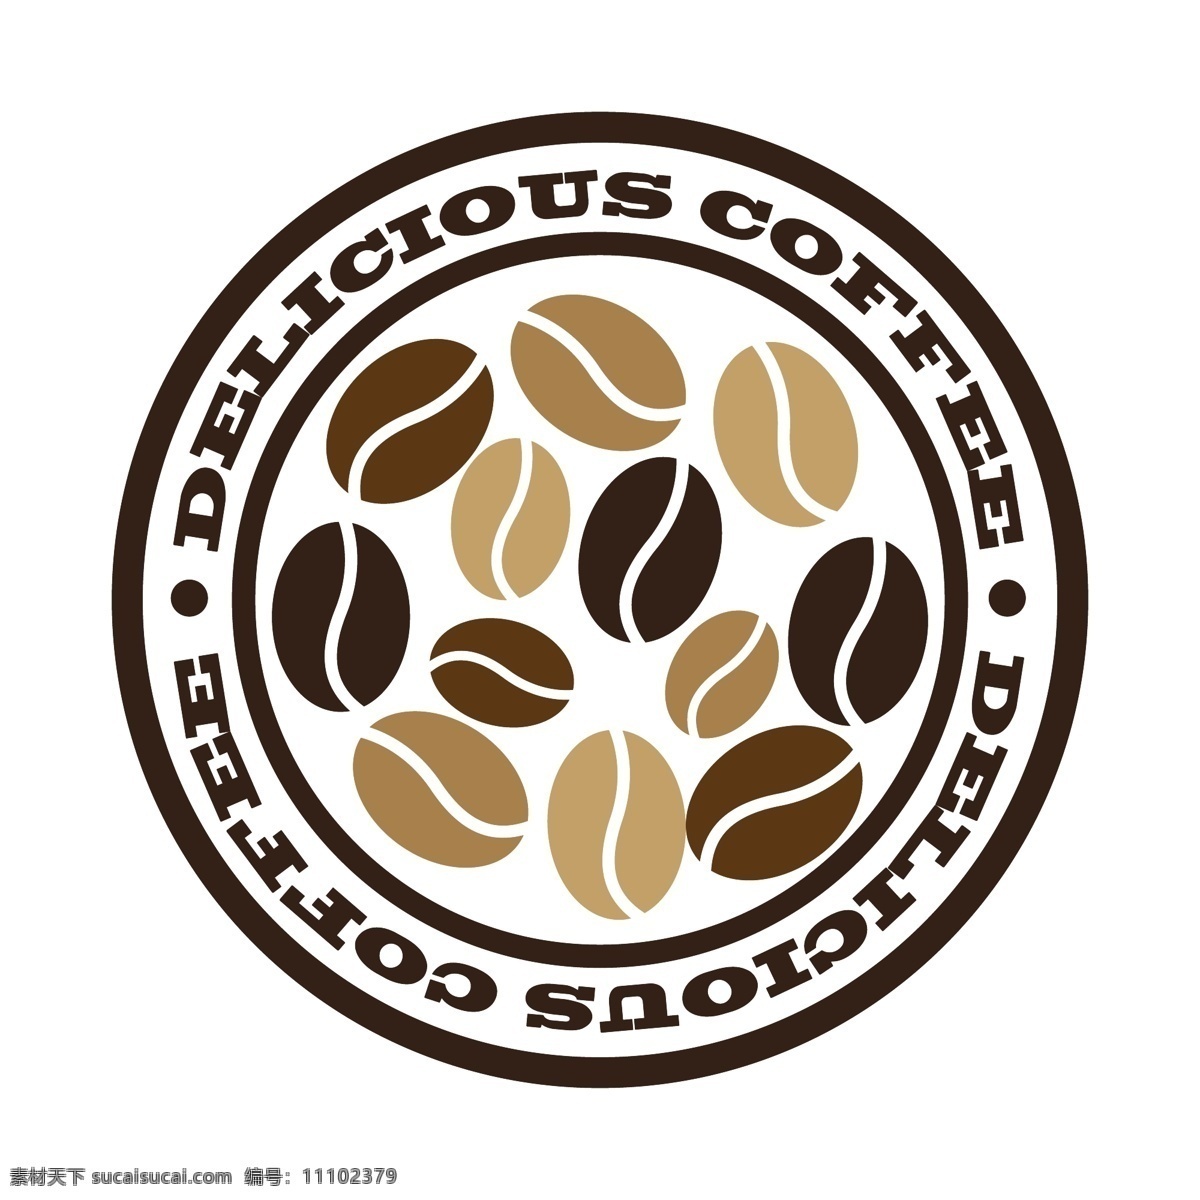 咖啡 coffee 咖啡设计 咖啡图标 咖啡标志 咖啡豆 咖啡店 咖啡元素 咖啡店图标 logo 咖啡商标 图标 标志 vi icon 小图标 图标设计 logo设计 标志设计 标识设计 矢量设计 餐饮美食 生活百科